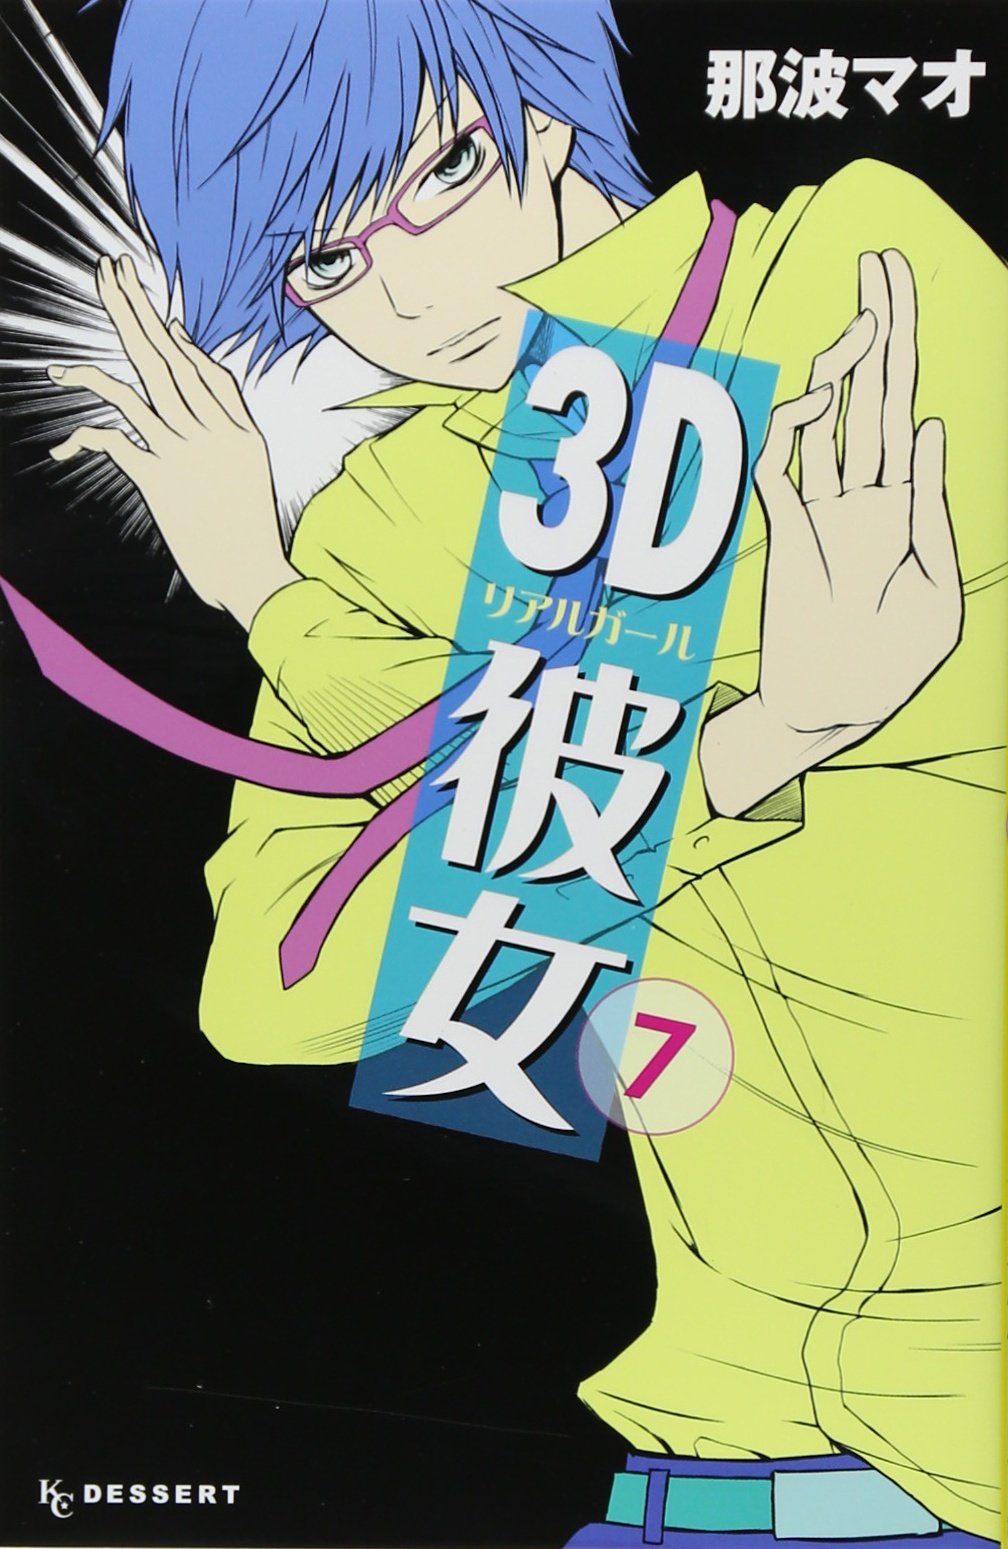 3D Kanojo Real Girl New Edition Vol. 7 - Tokyo Otaku Mode (TOM)